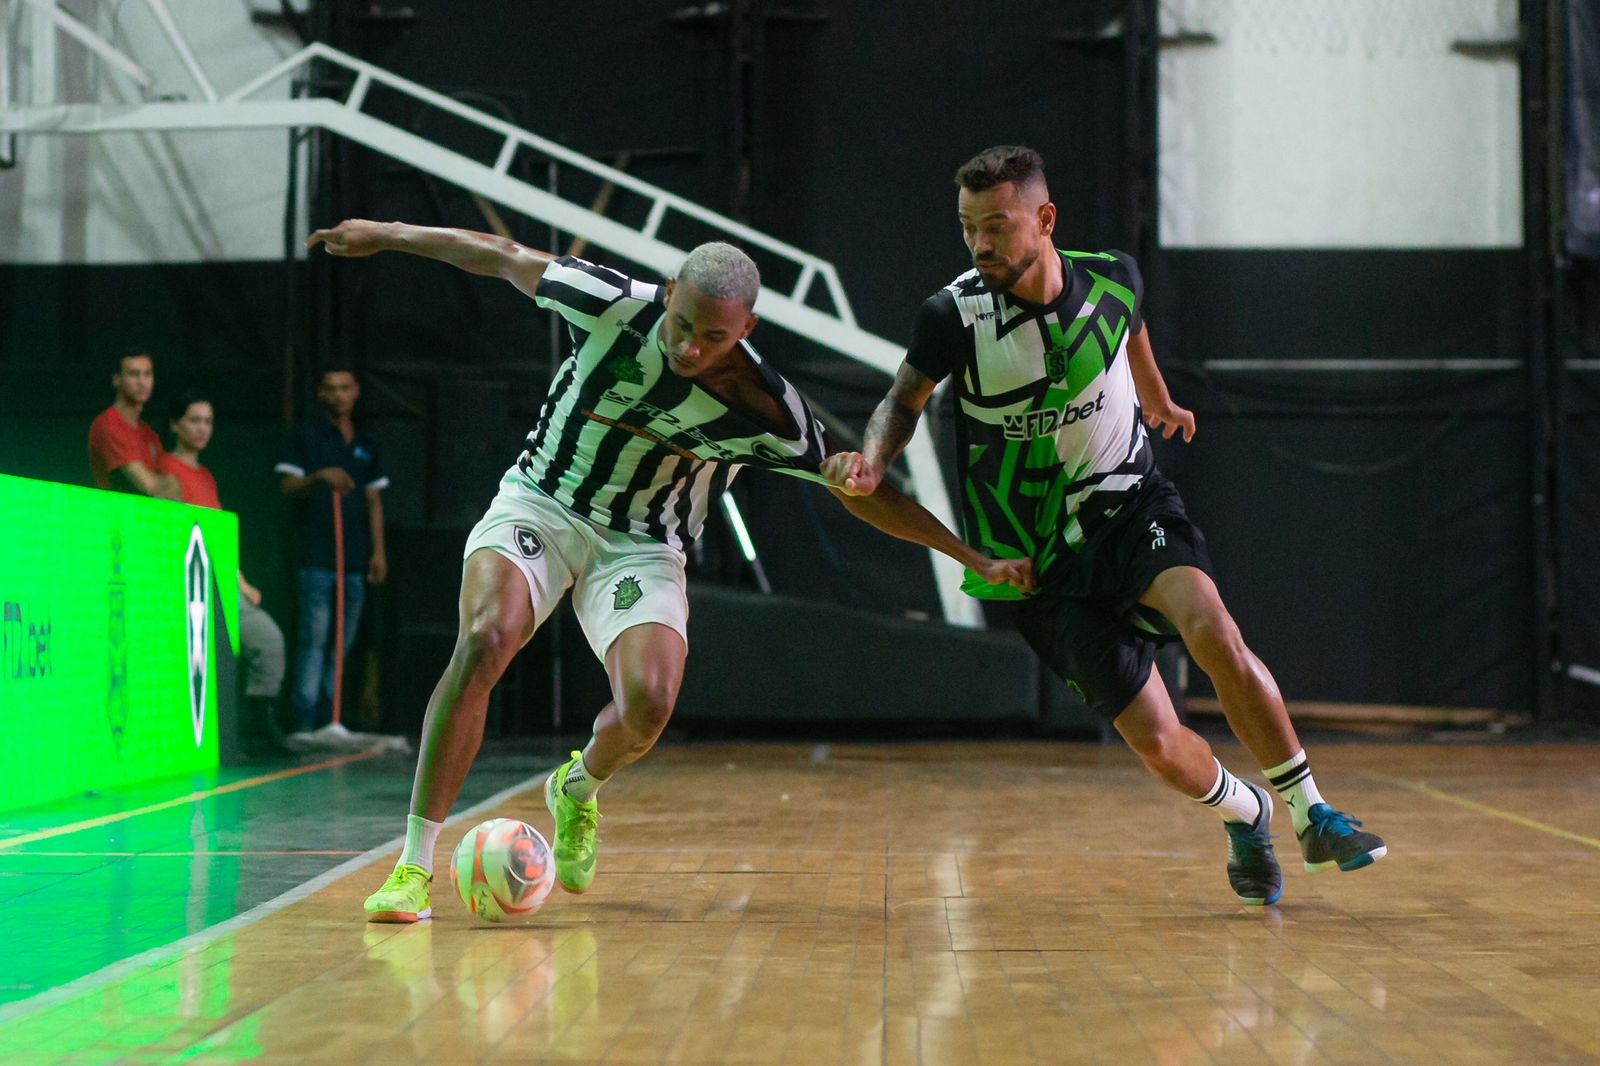 Desafio Um pra Um e Botafogo: Leleti bate Vassoura em X1. (Imagem: Adriano Fontes / Equipe Desafio Um pra Um)